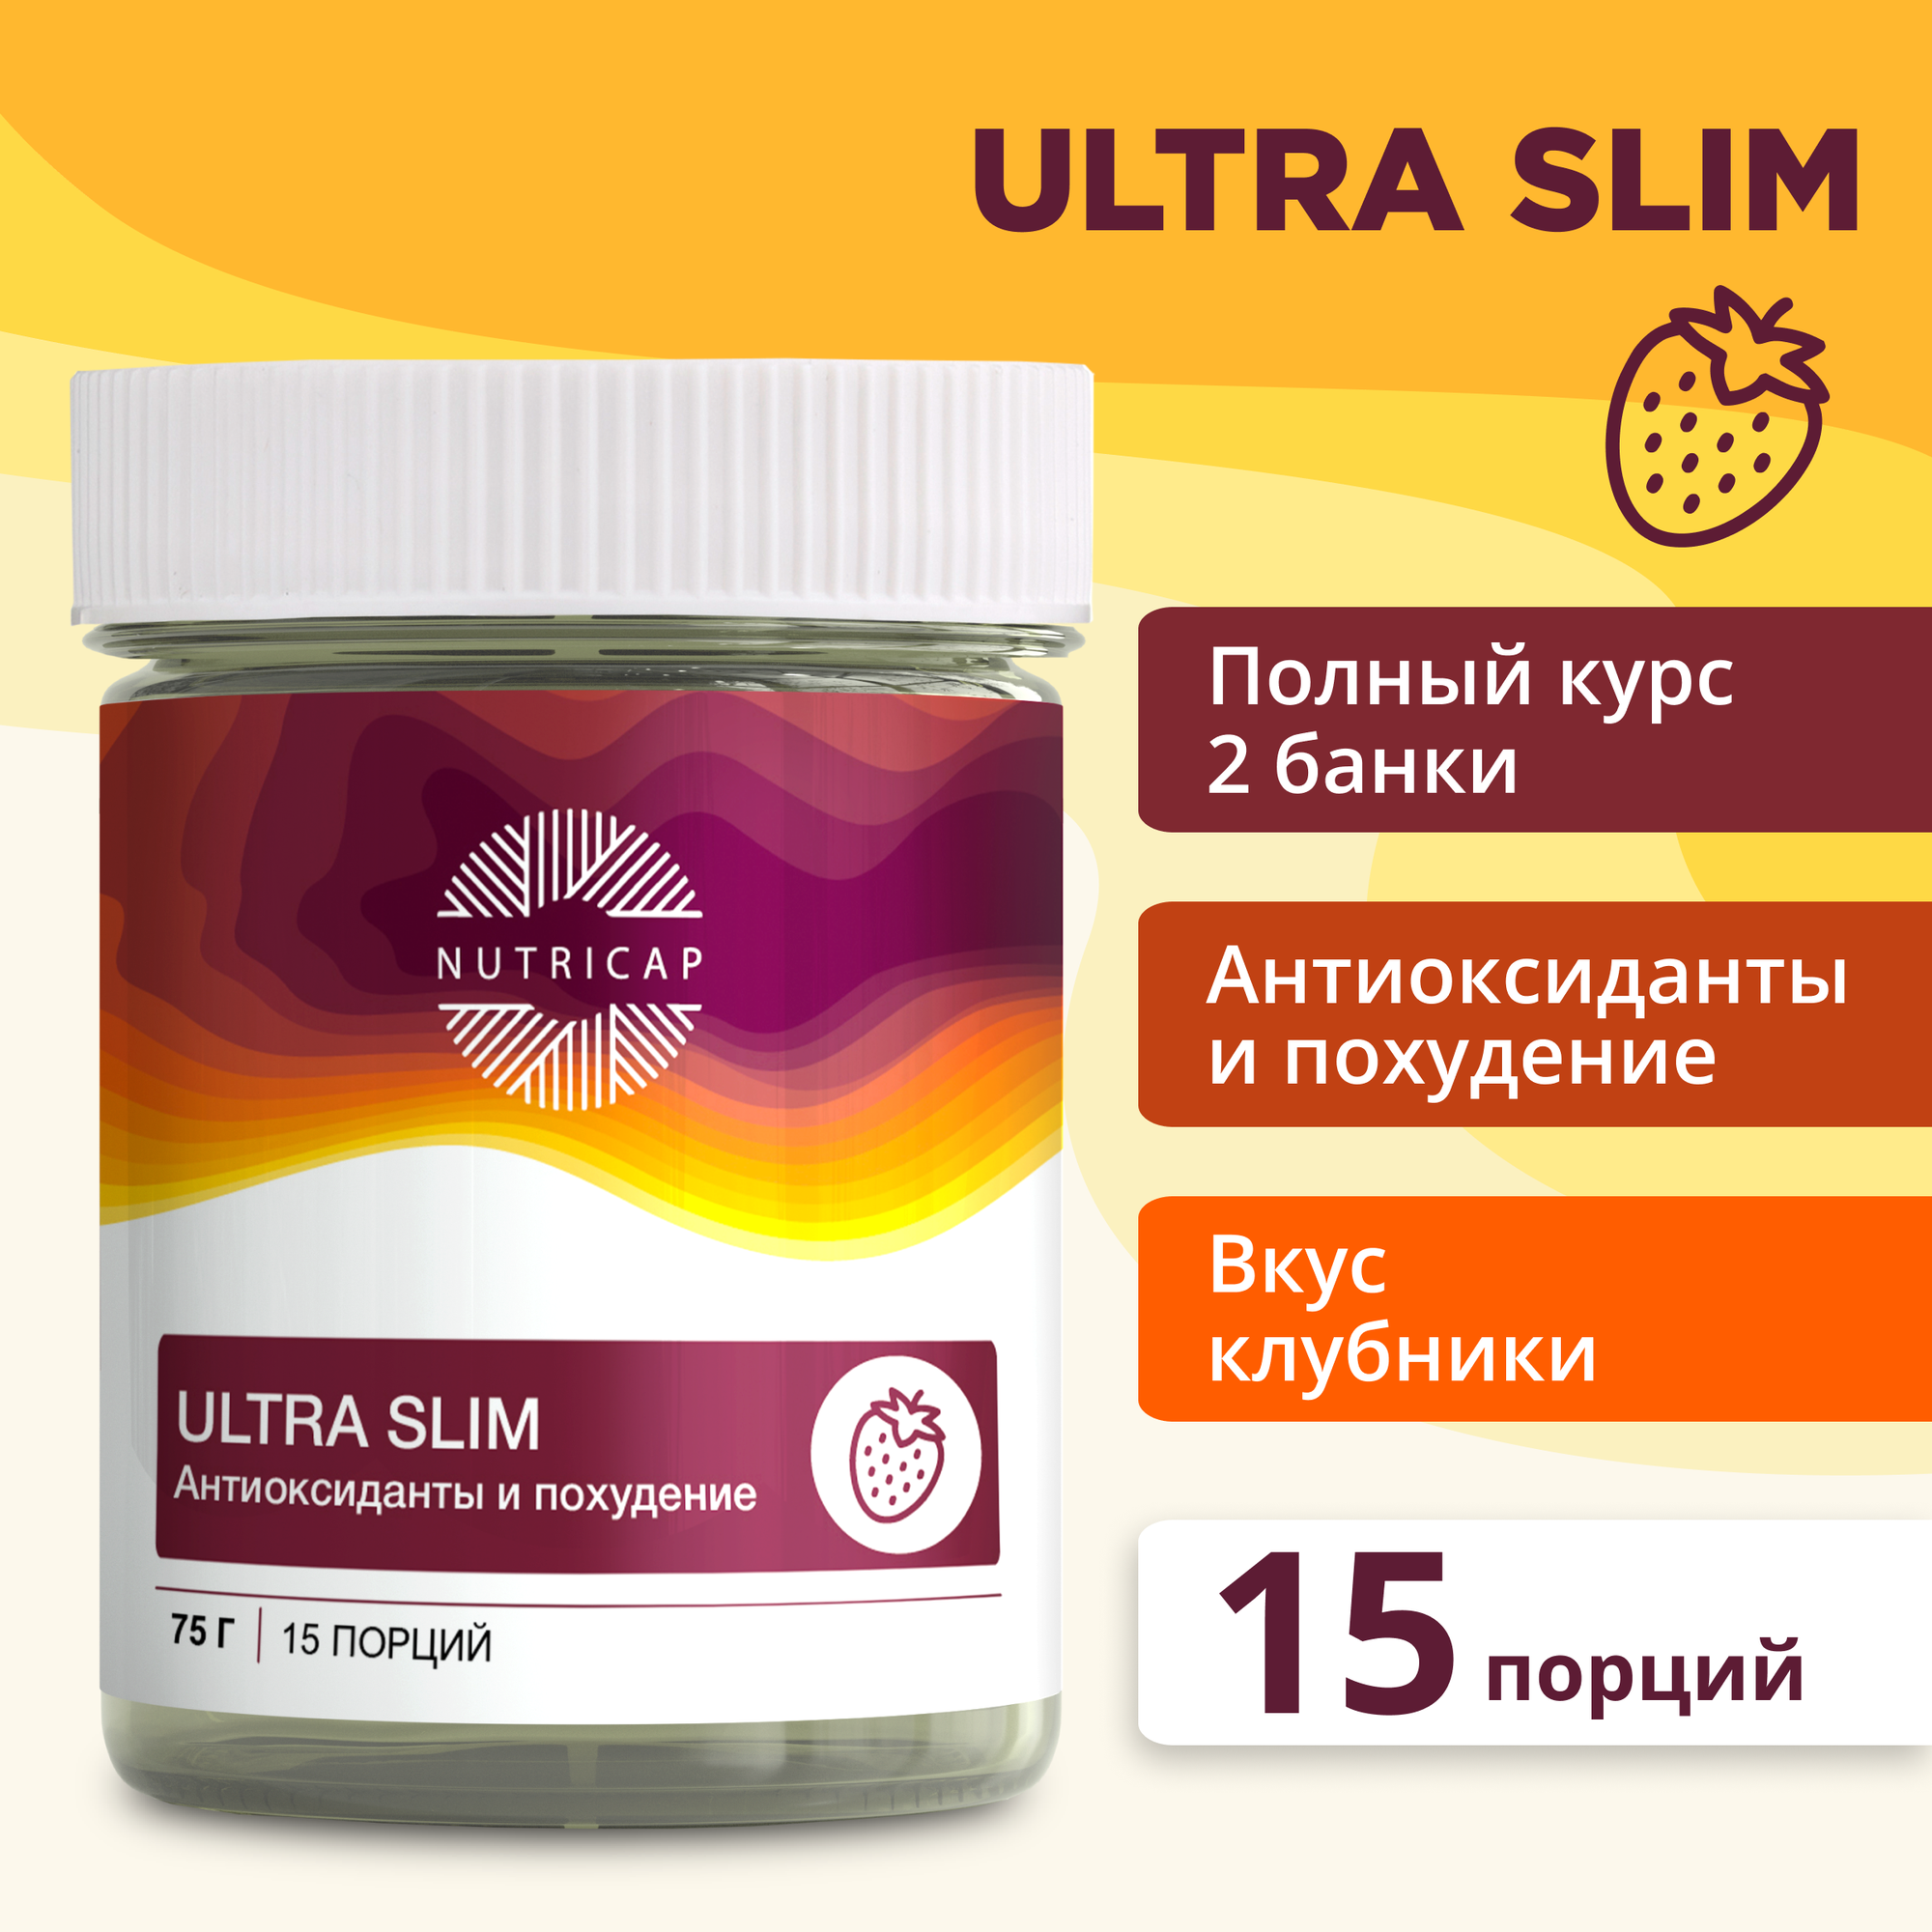 Дренажный напиток "Ультра слим" антиоксиданты и похудение (75г)